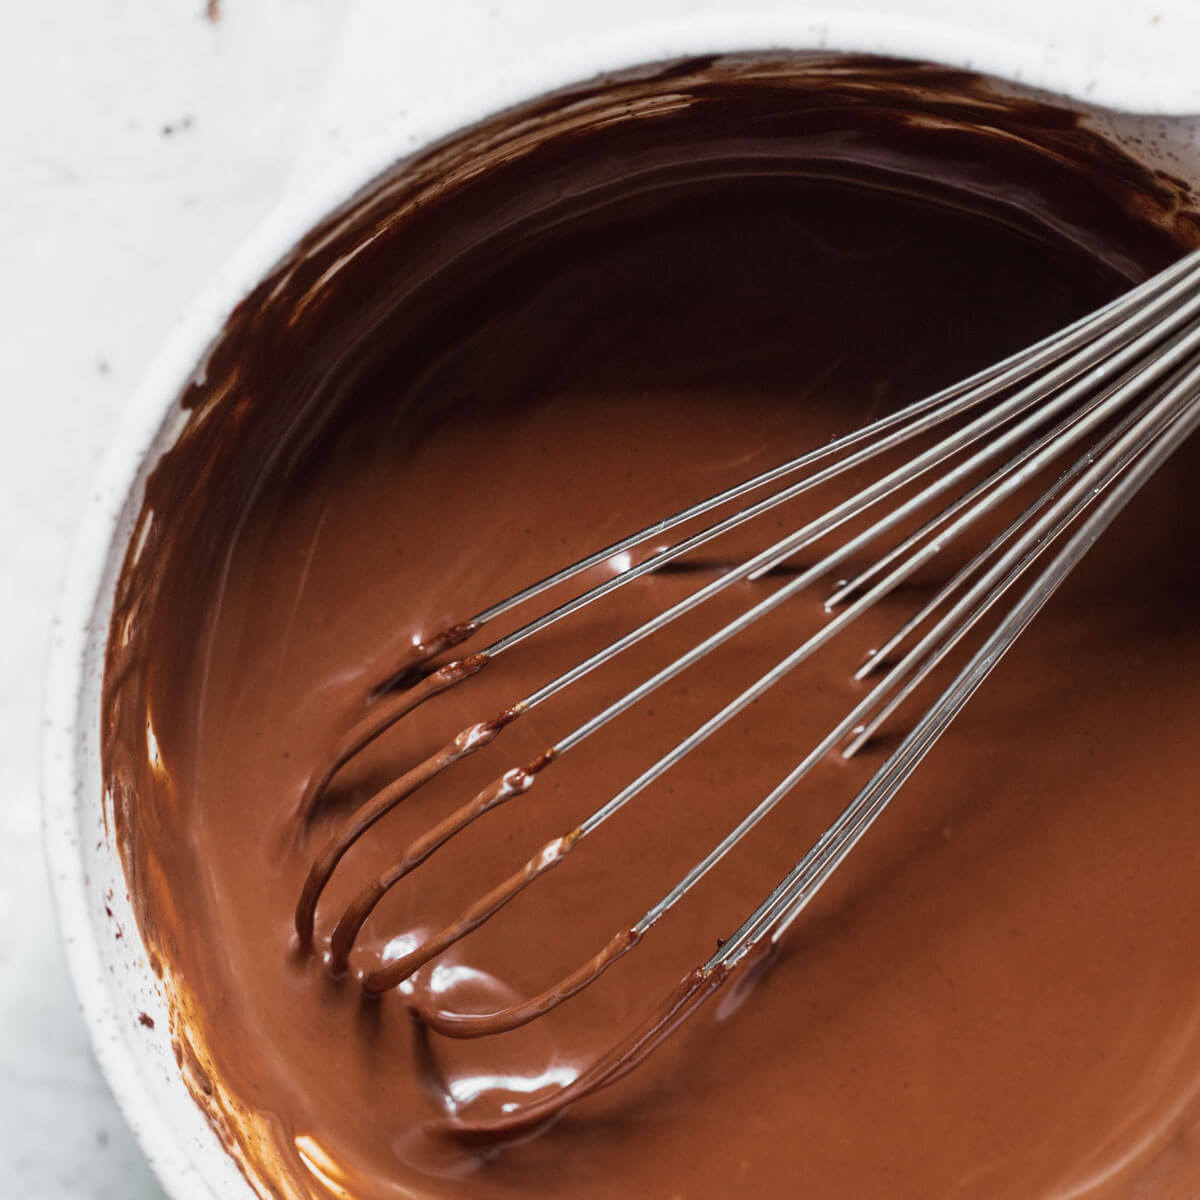 Homemade Chocolate Cream Pie Recipe - Live Well Bake Often